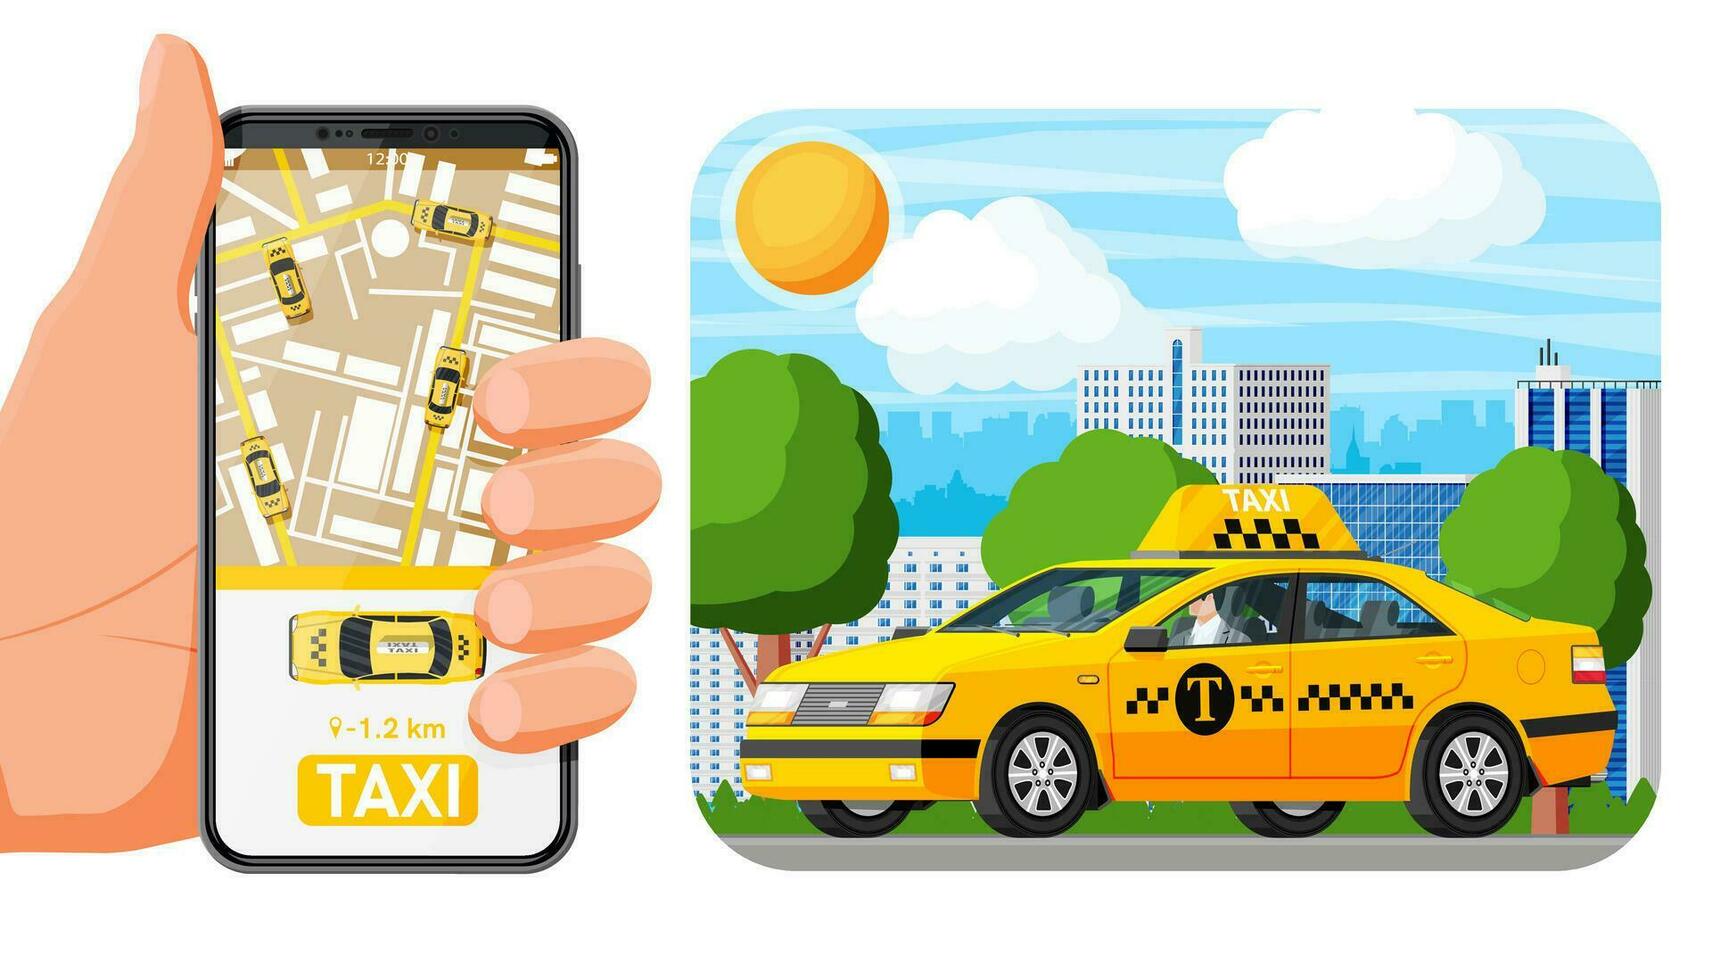 Đặt xe Taxi Nội Bài chưa bao giờ dễ đến thế: Thao tác online, giá niêm yết, đa dạng loại xe- Ảnh 1.